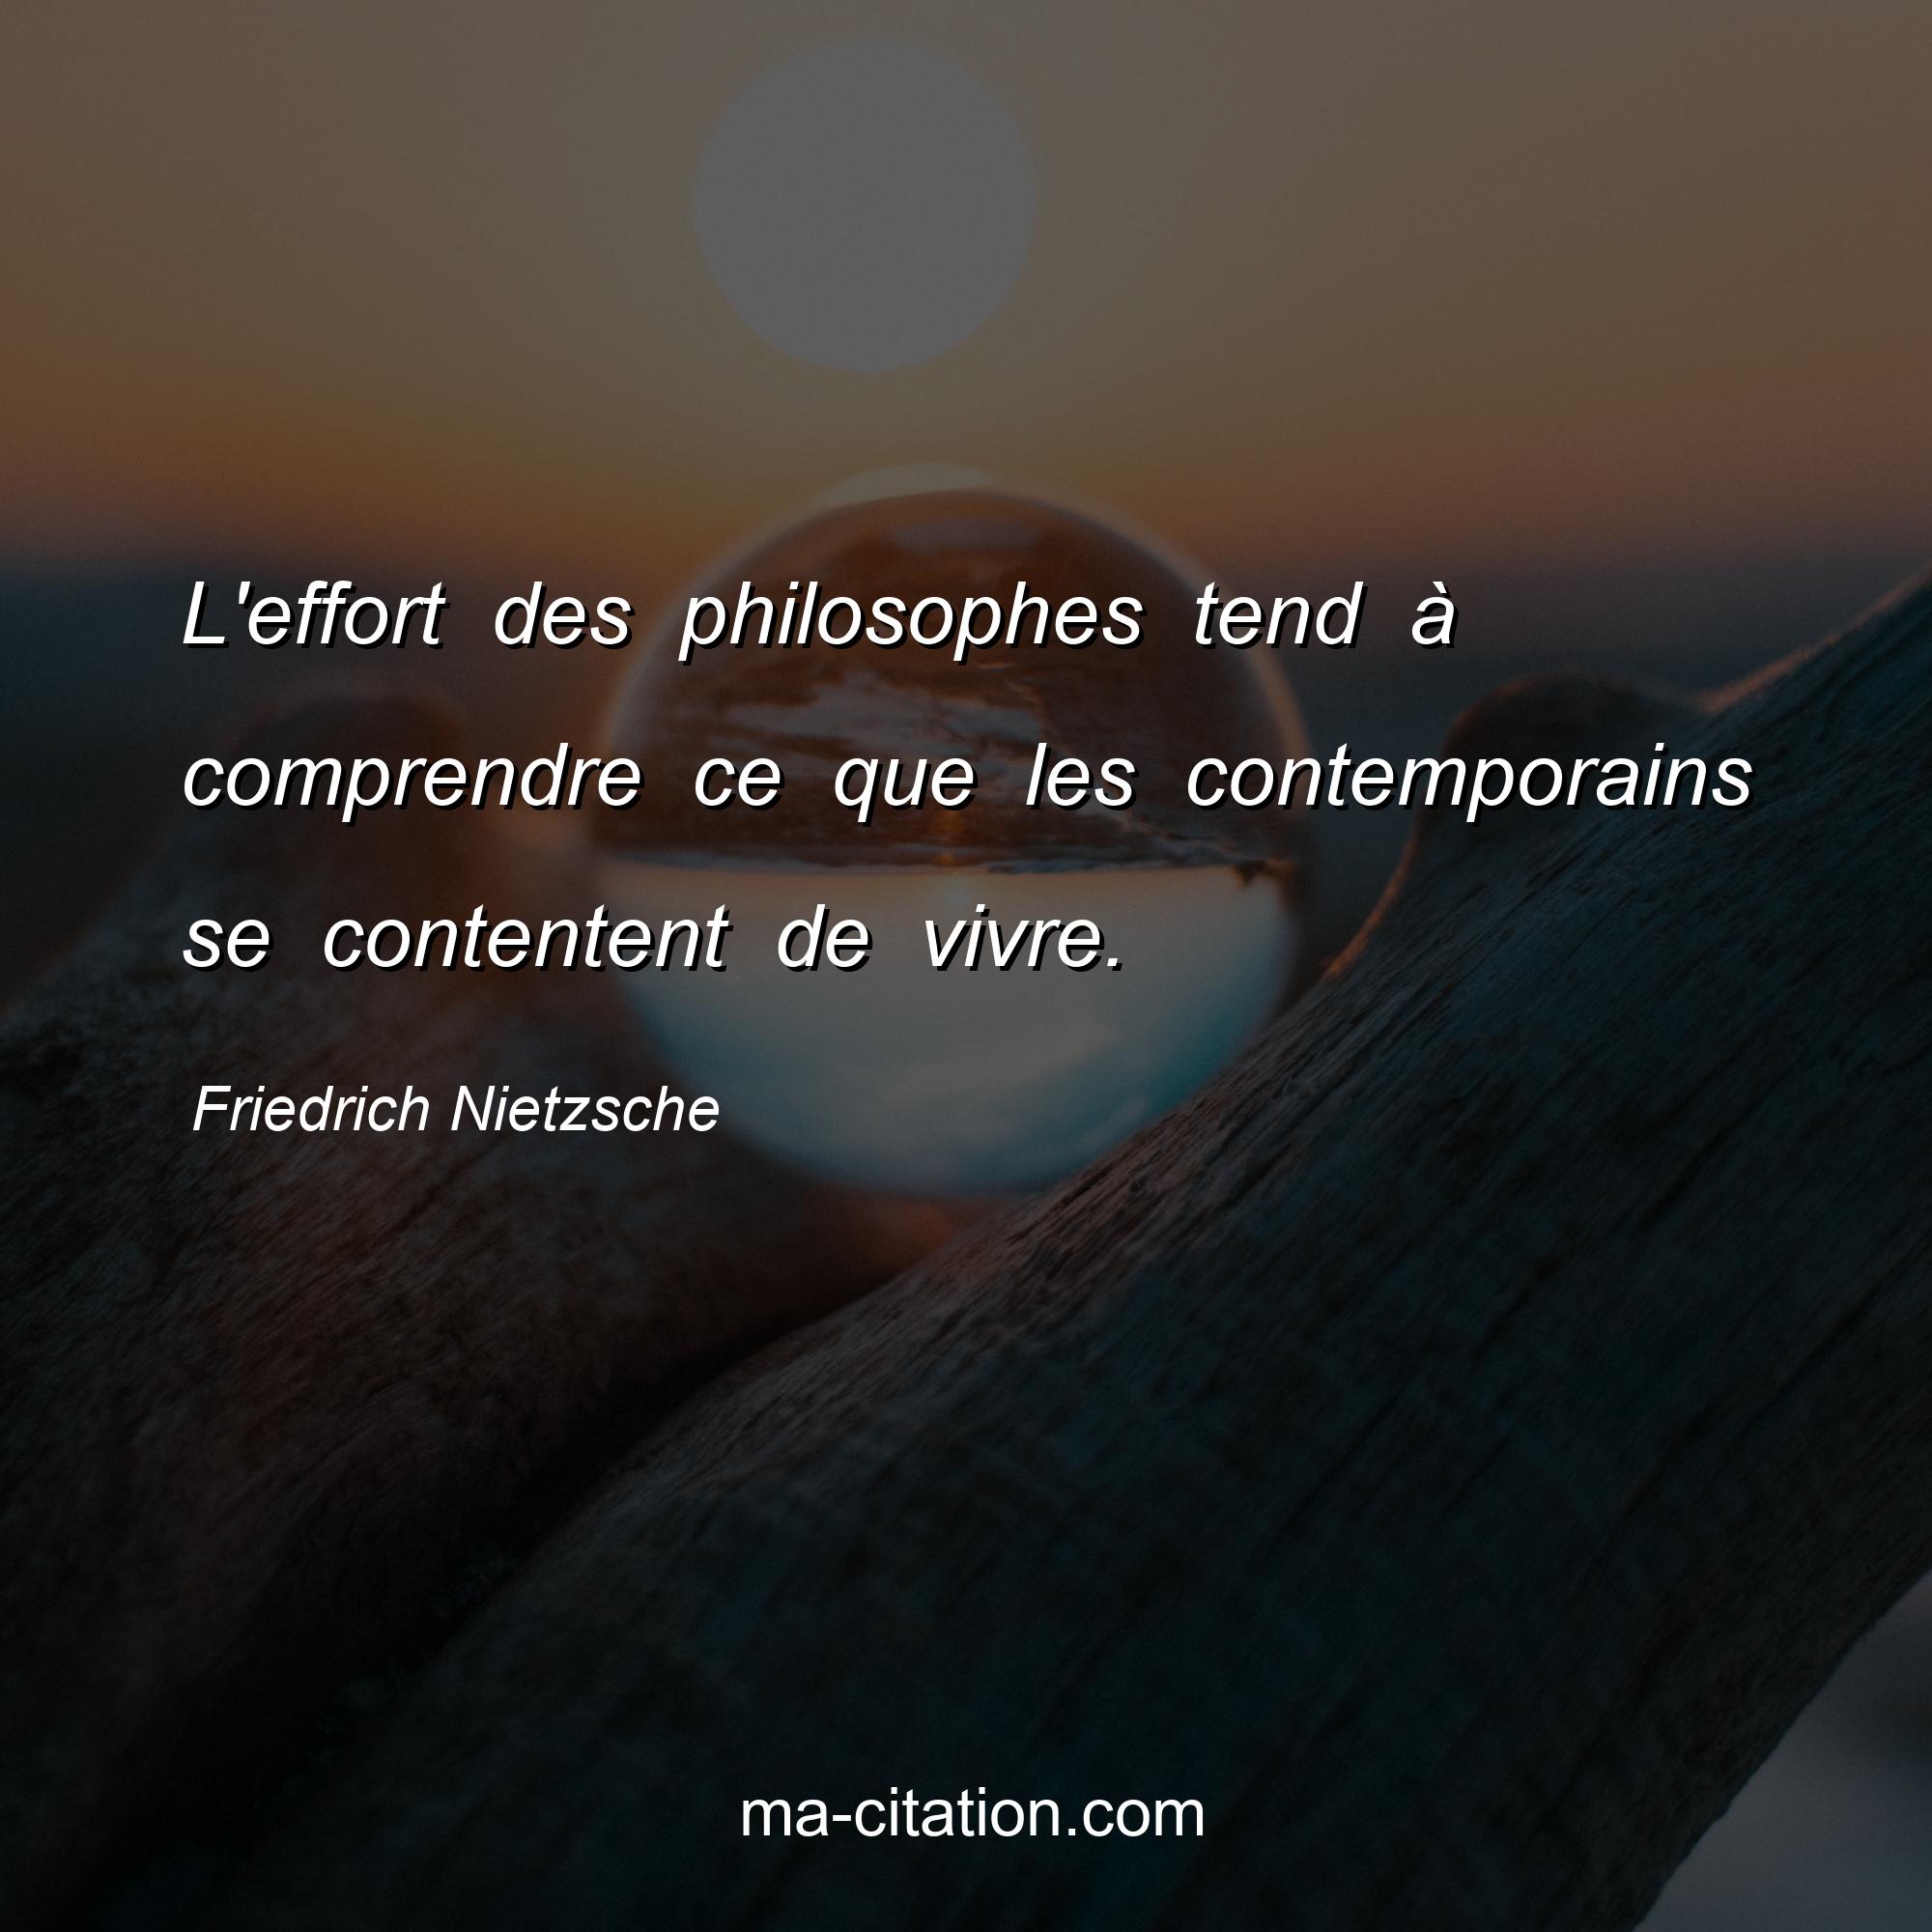 Friedrich Nietzsche : L'effort des philosophes tend à comprendre ce que les contemporains se contentent de vivre.